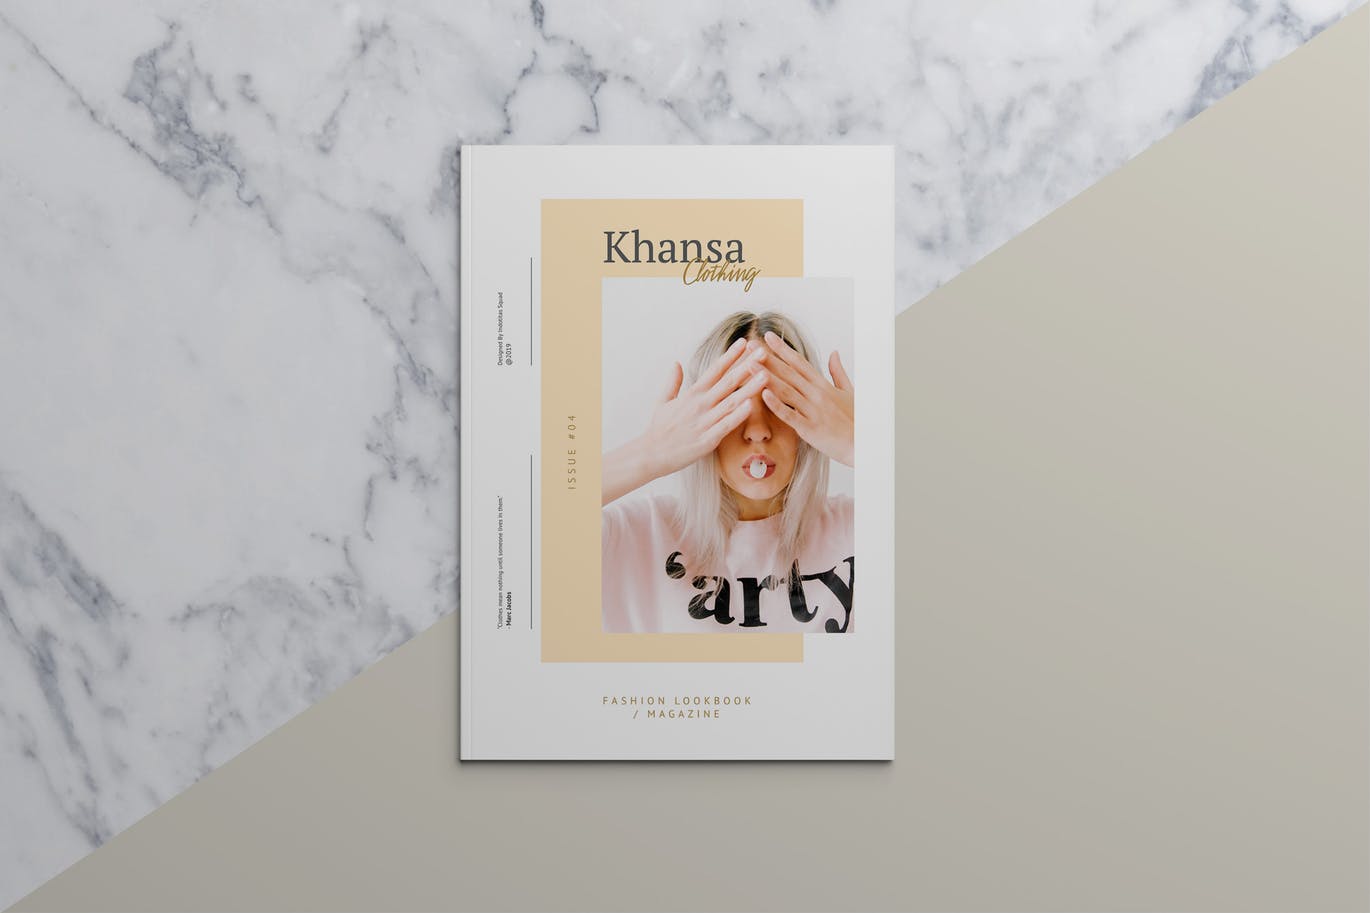 品牌时装/摄影/建筑行业产品目录&杂志设计模板 KHANSA – Fashion Lookbook & Magazine插图